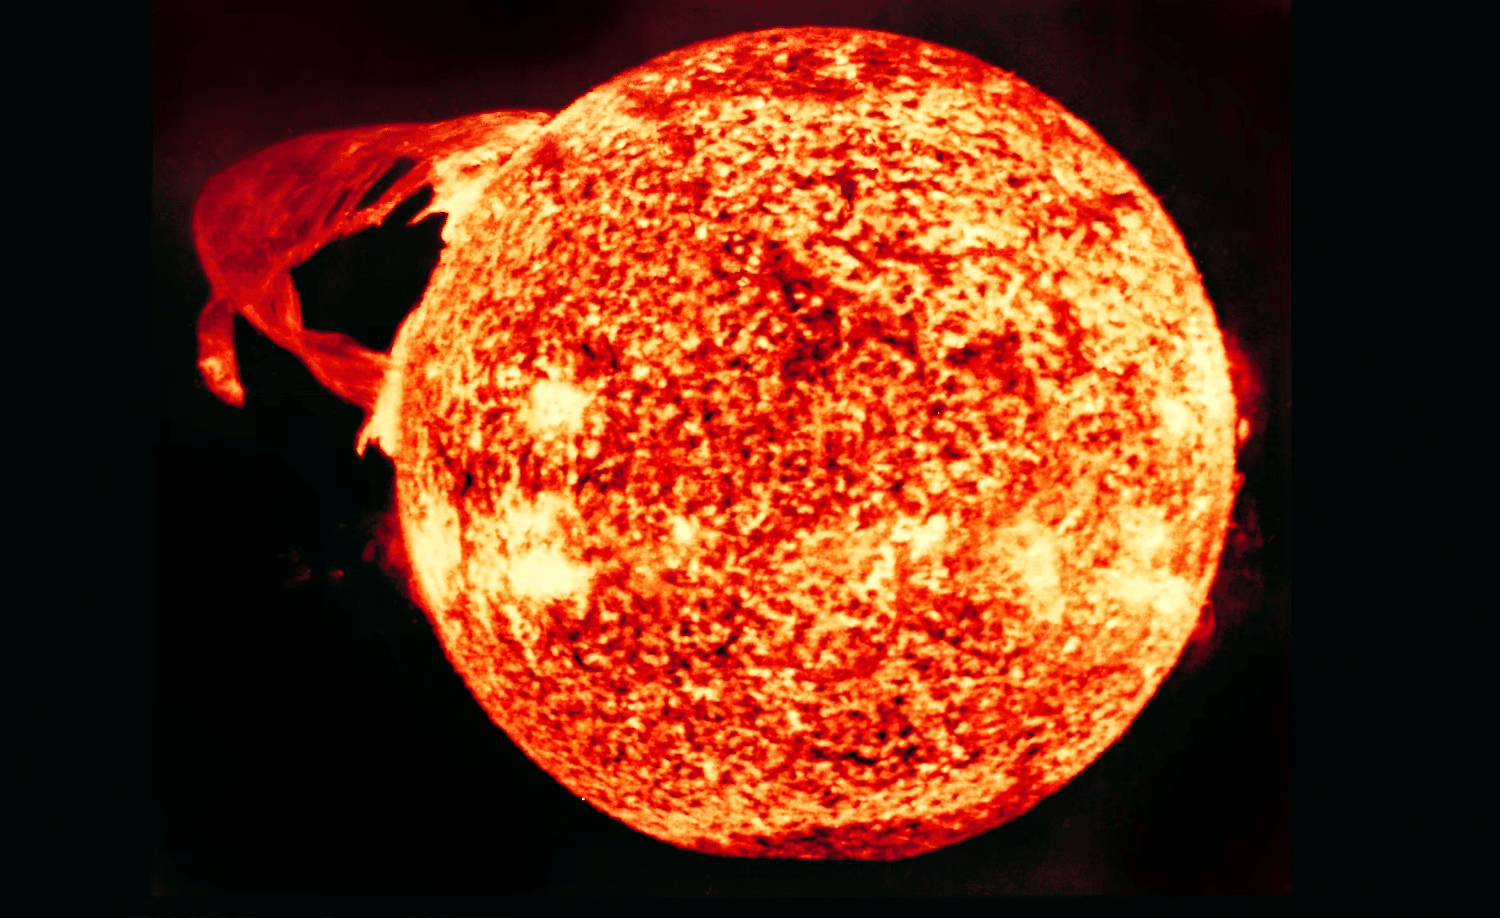 Фотография Солнца, сделанная 19 декабря 1973 года с борта «Скайлэб» / ©NASA